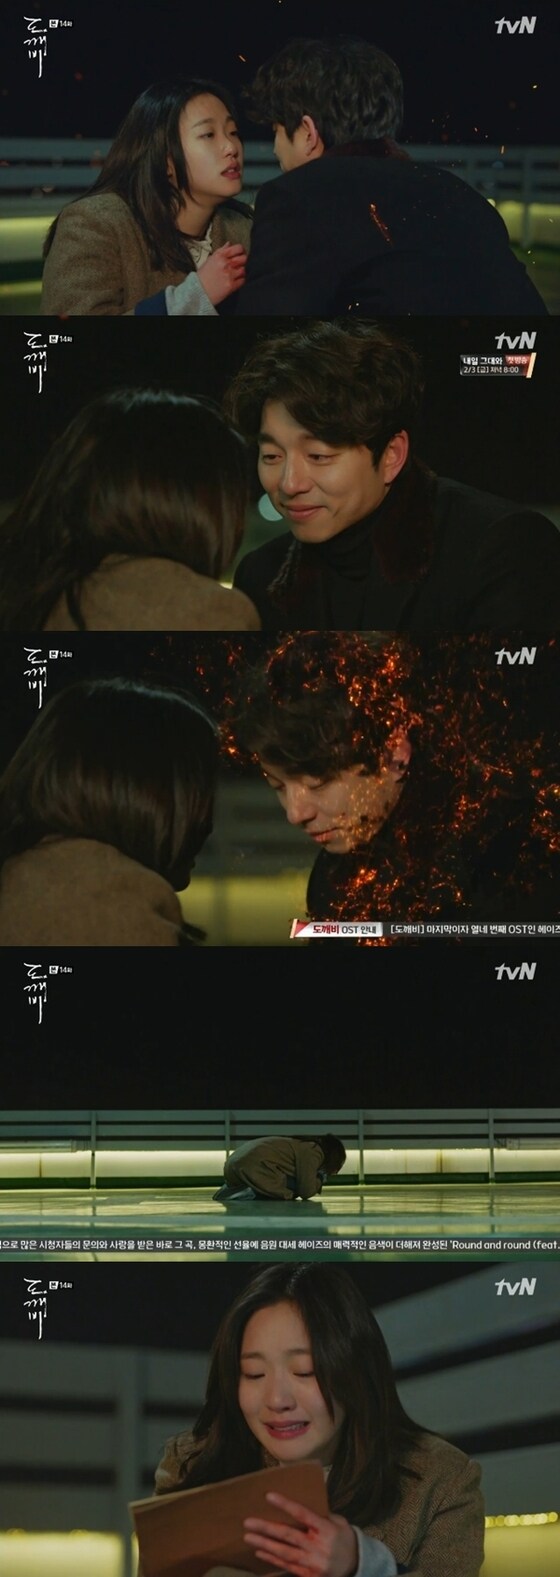 도깨비 김신(공유 분)이 사라졌다. © News1star/ tvN '도깨비' 캡처